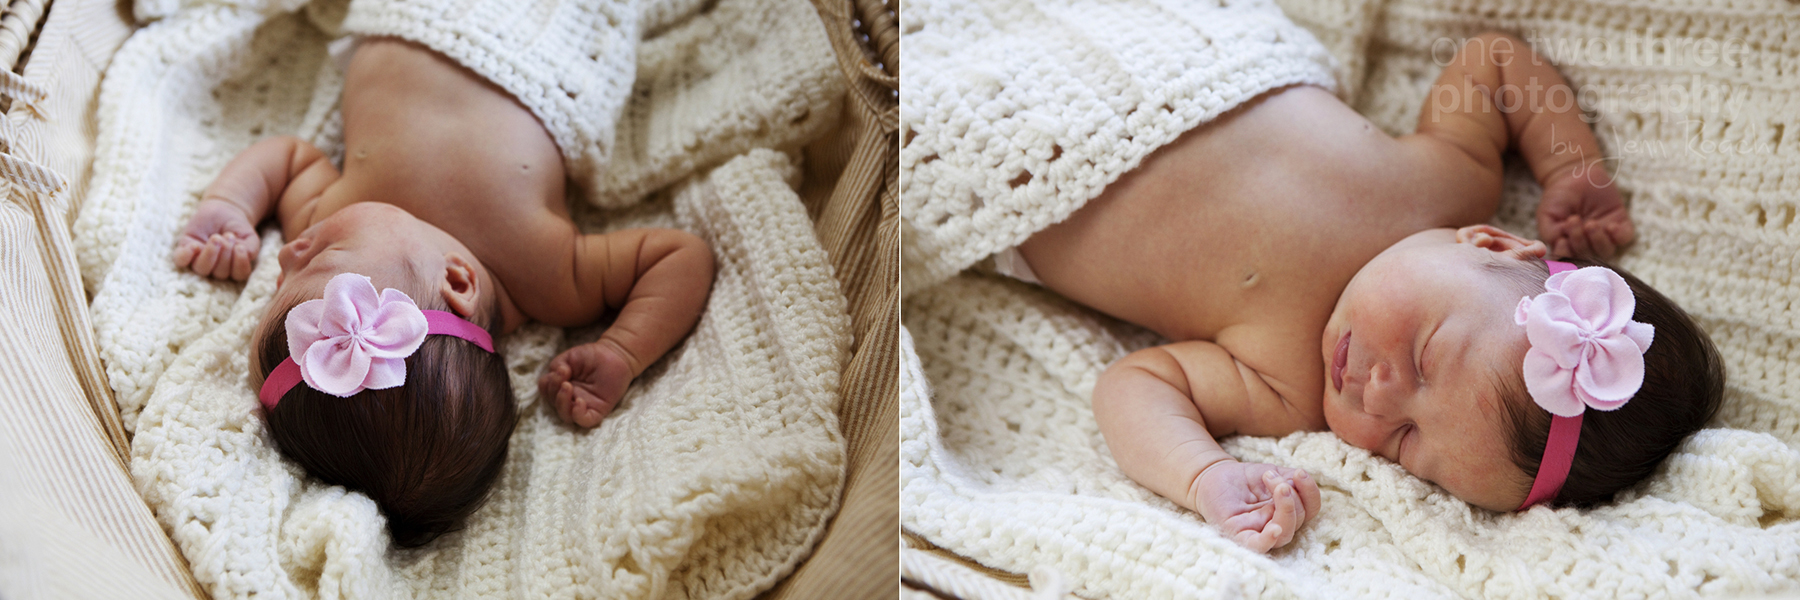 Leah sleeps on the crocheted baby blanket in a wicker basinet